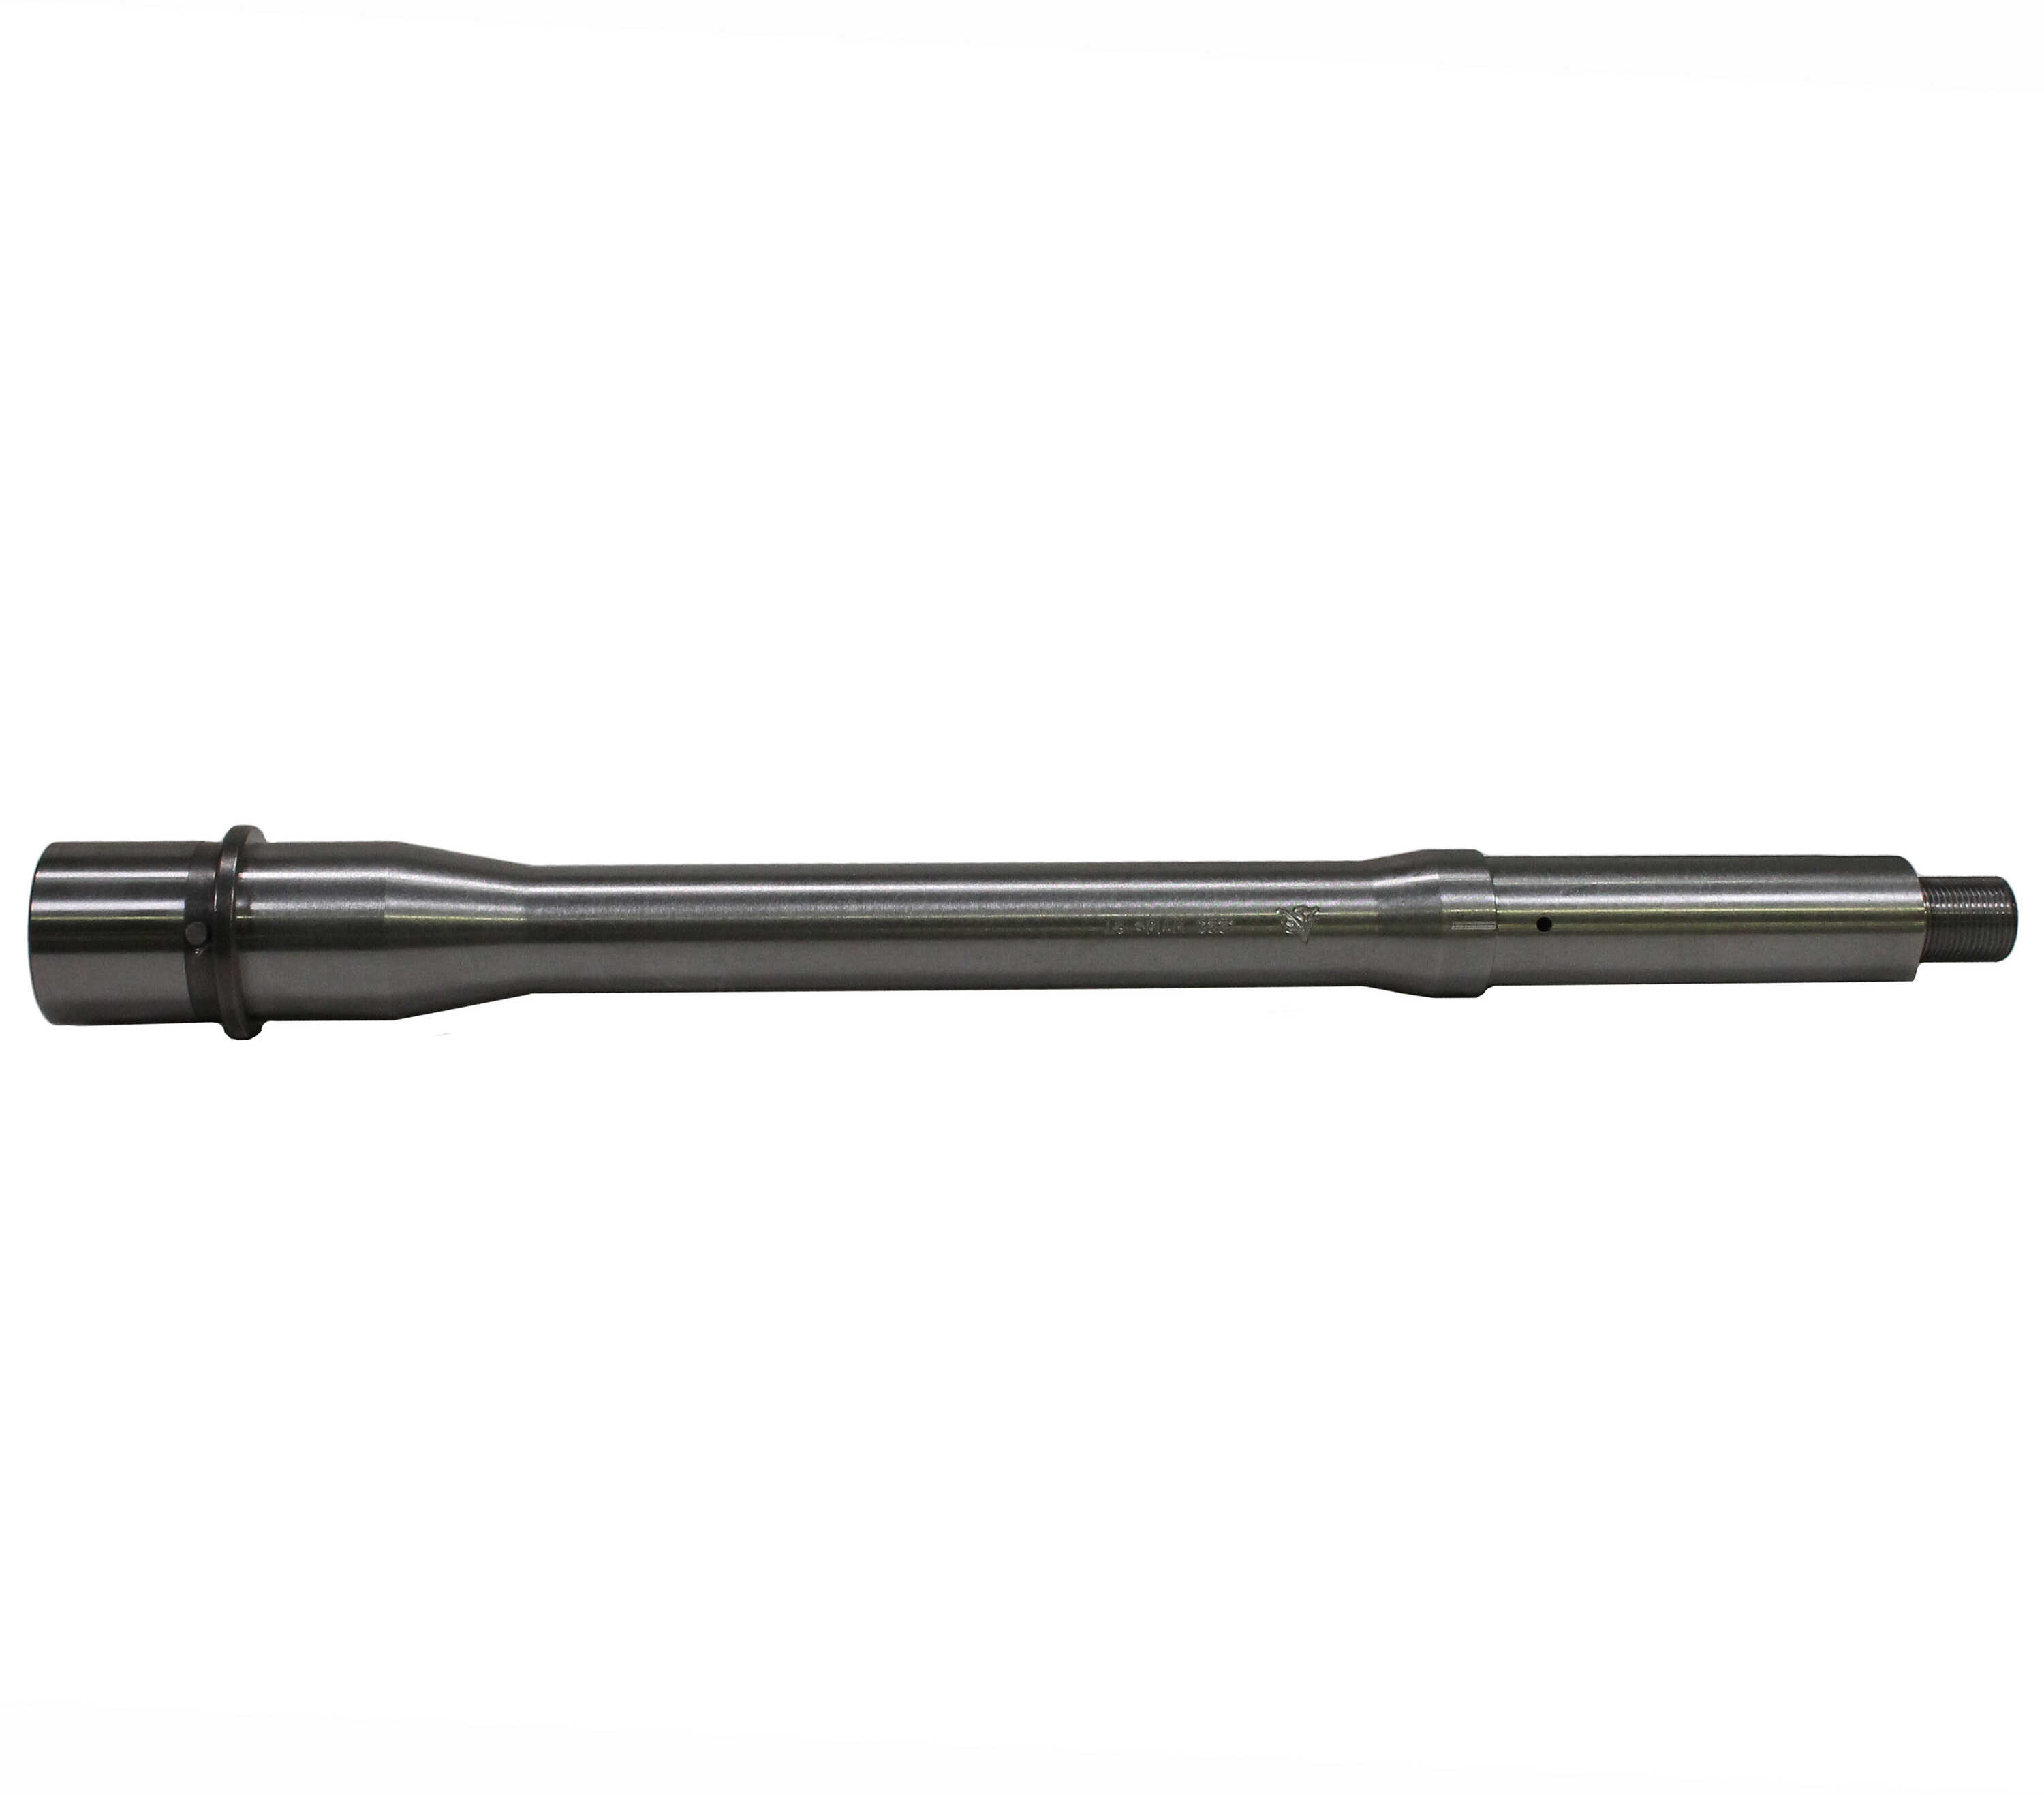 223Wylde Barrel 10.5" Medium Profile Carbine Gas with Tunable Block Md: B-223-10-C-TG